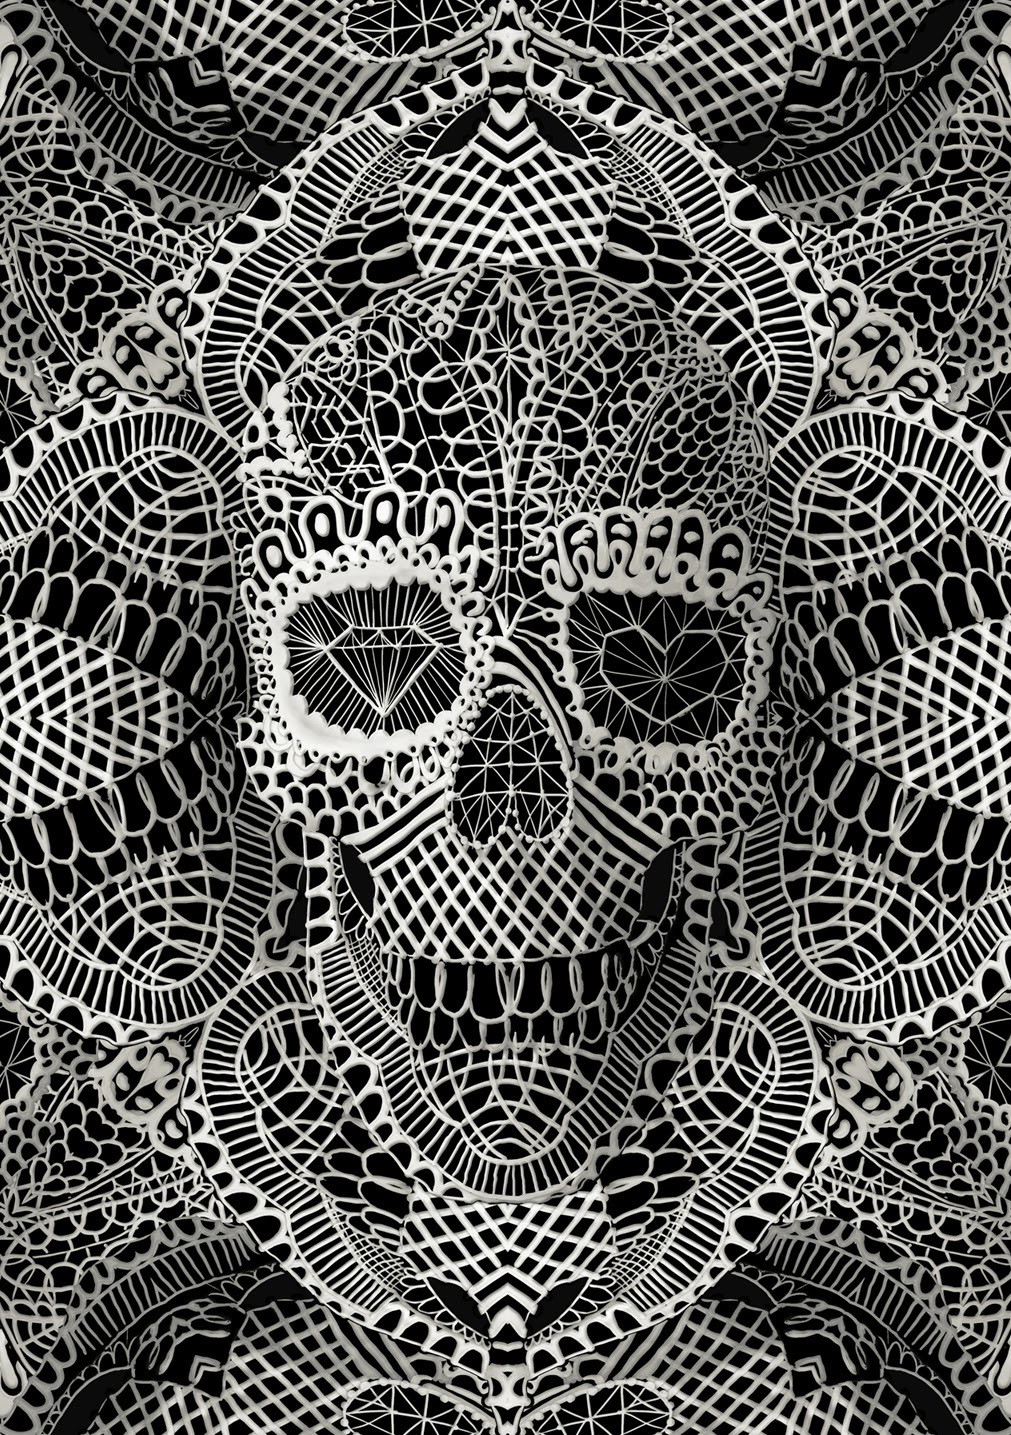 ©Ali Gulec. The Message. Decorative Skulls. Mixed Media